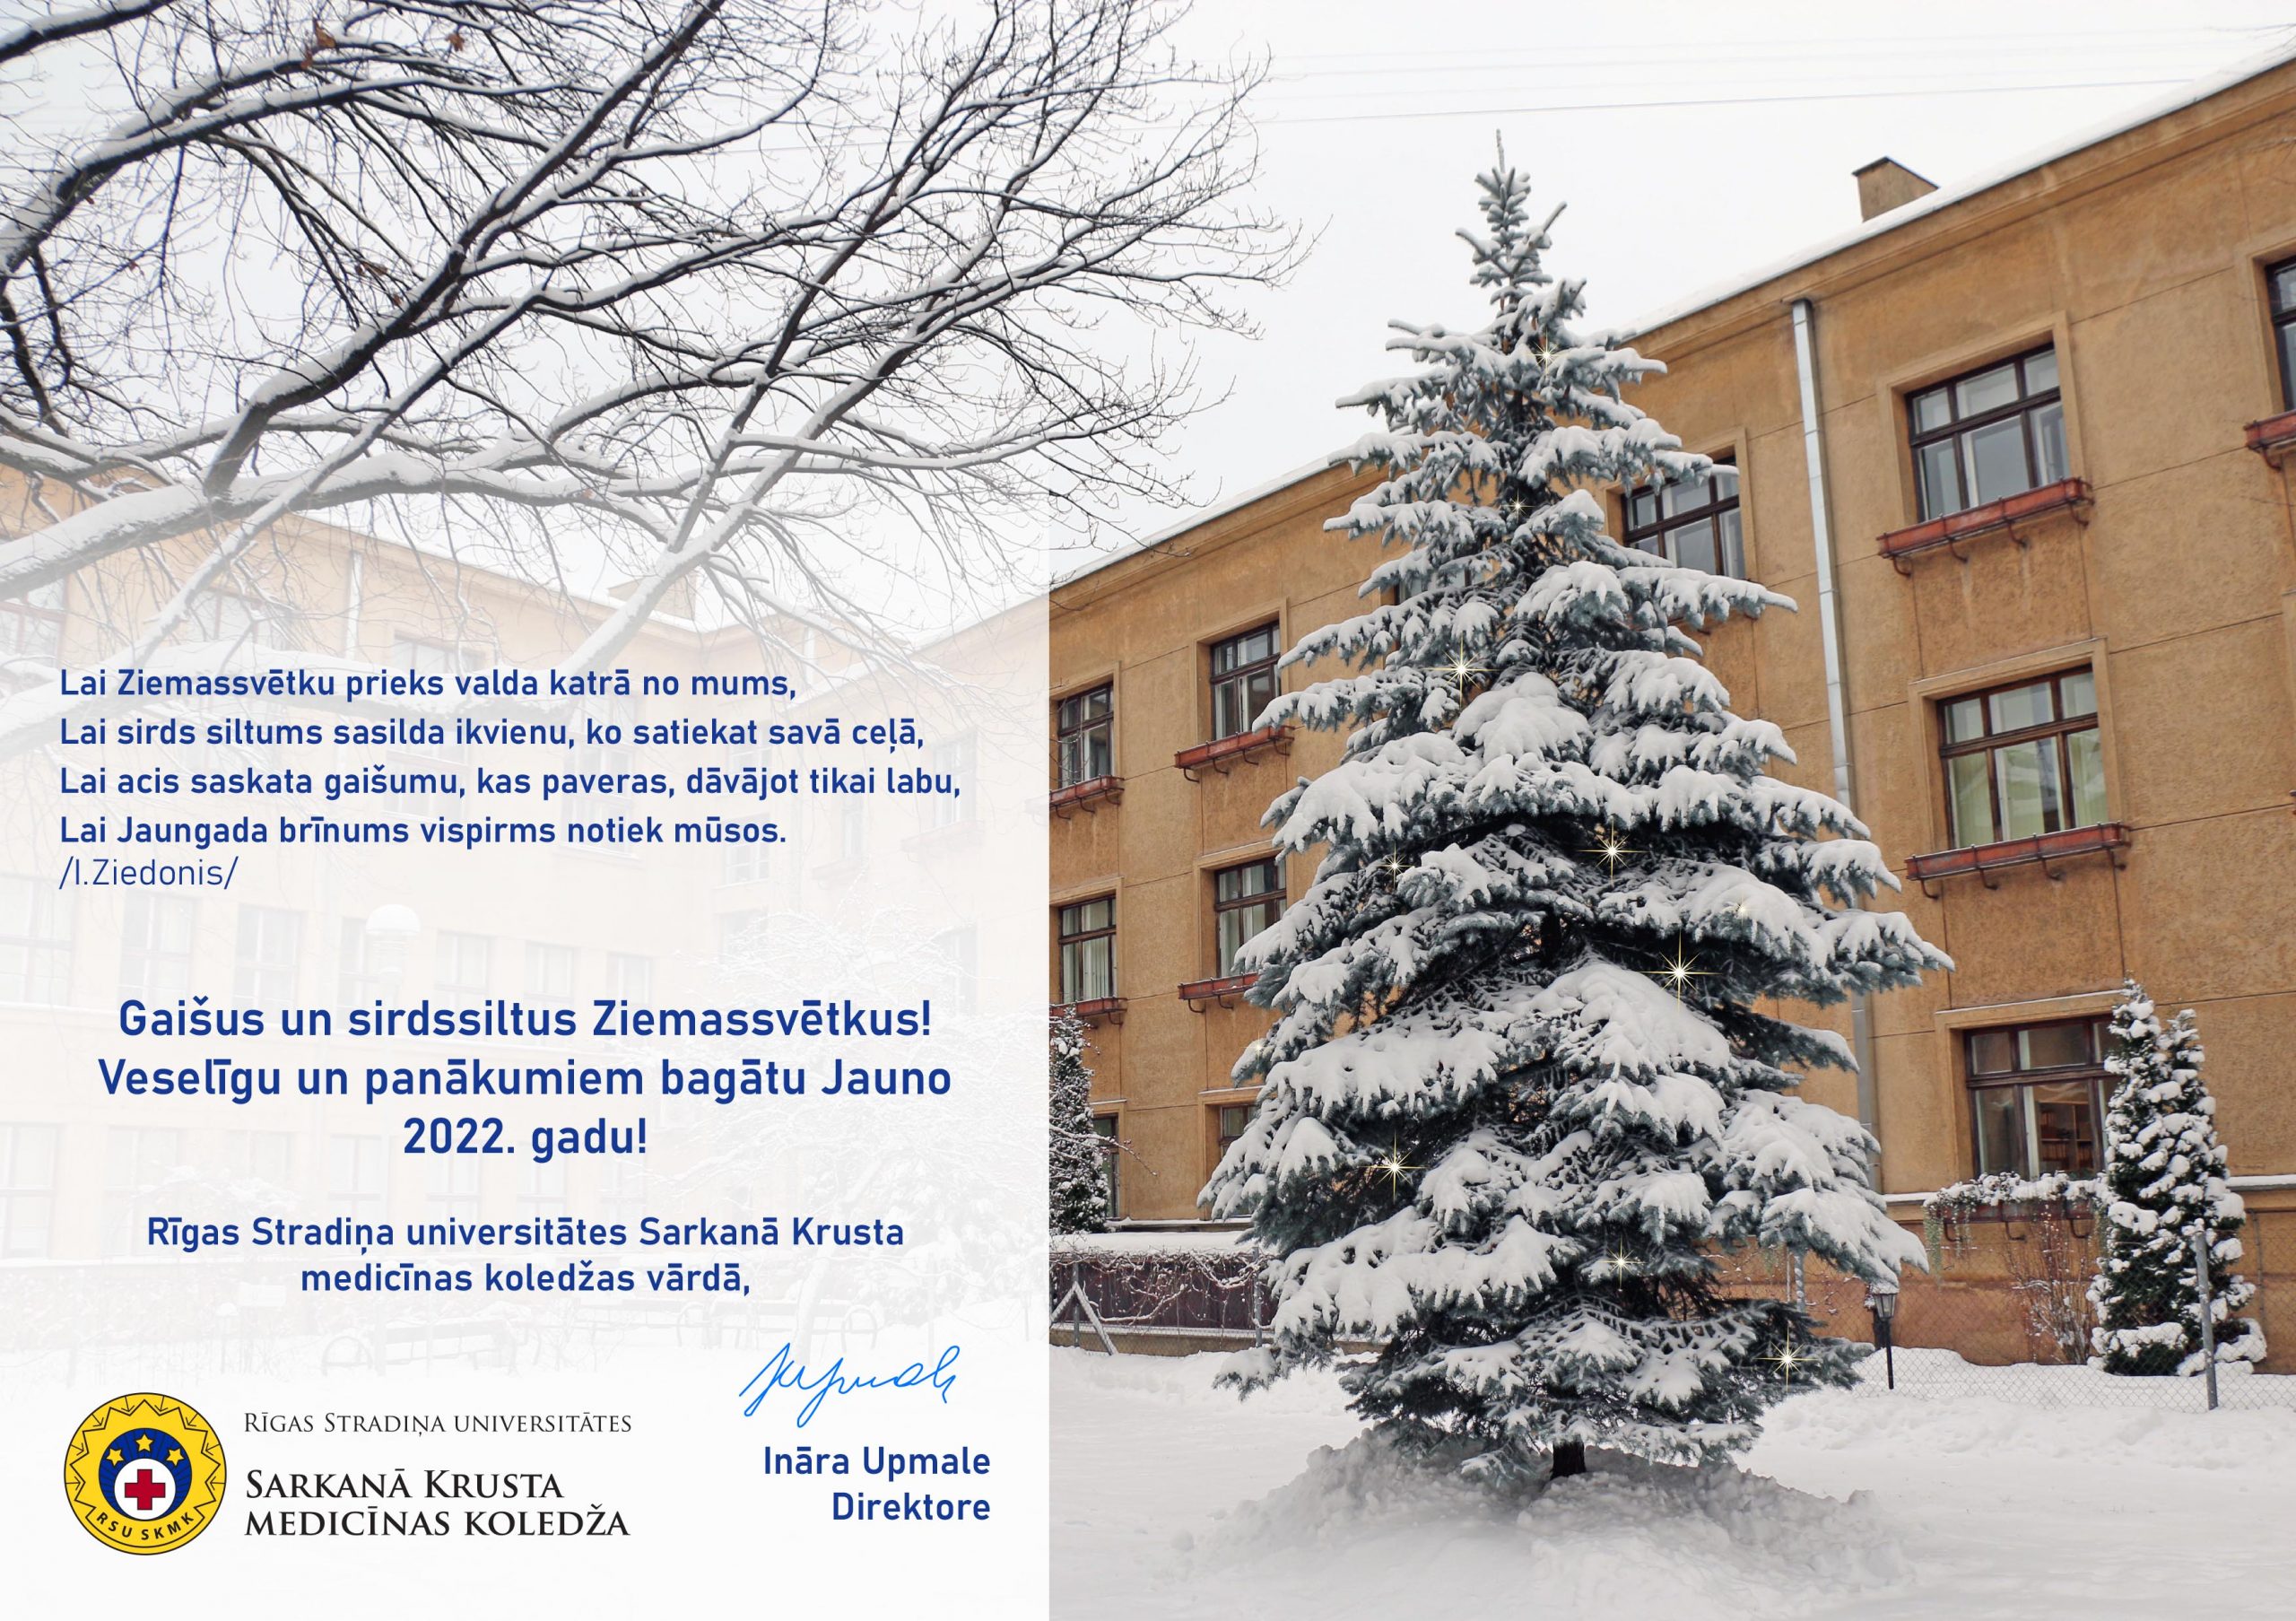 RSU Sarkanā Krusta medicīnas koledža novēl priecīgus Ziemassvētkus!